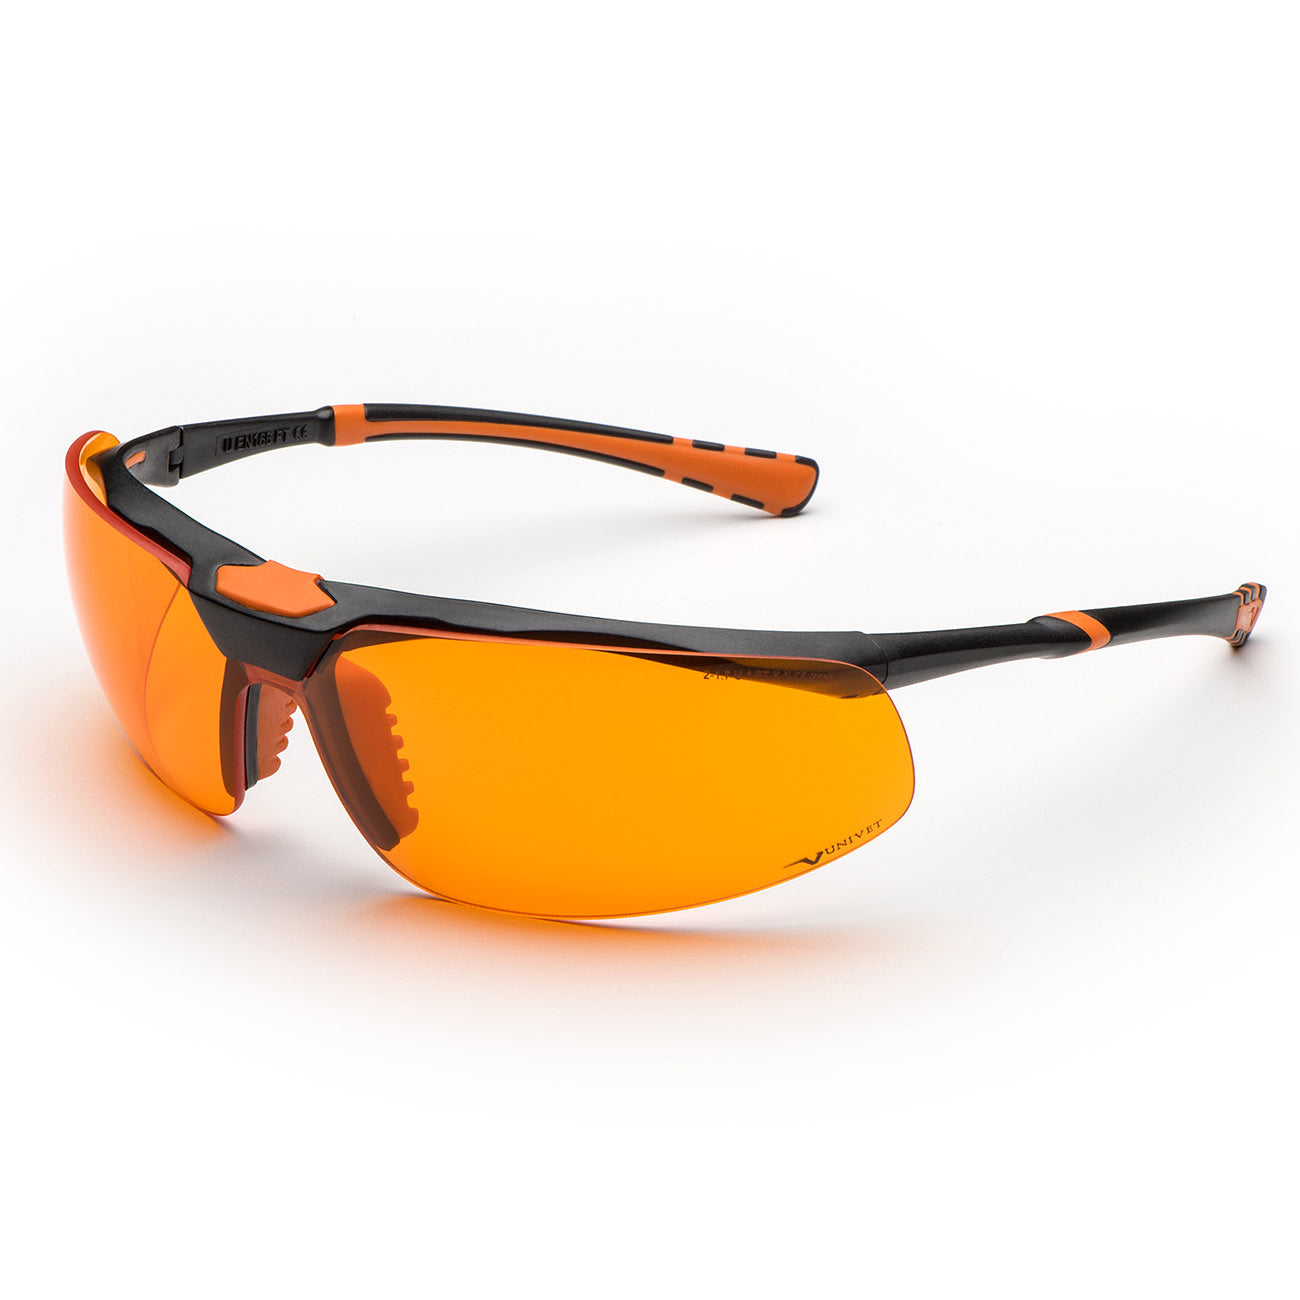 Univet 5X3 High Contrast Orange Lens Safety Glasses